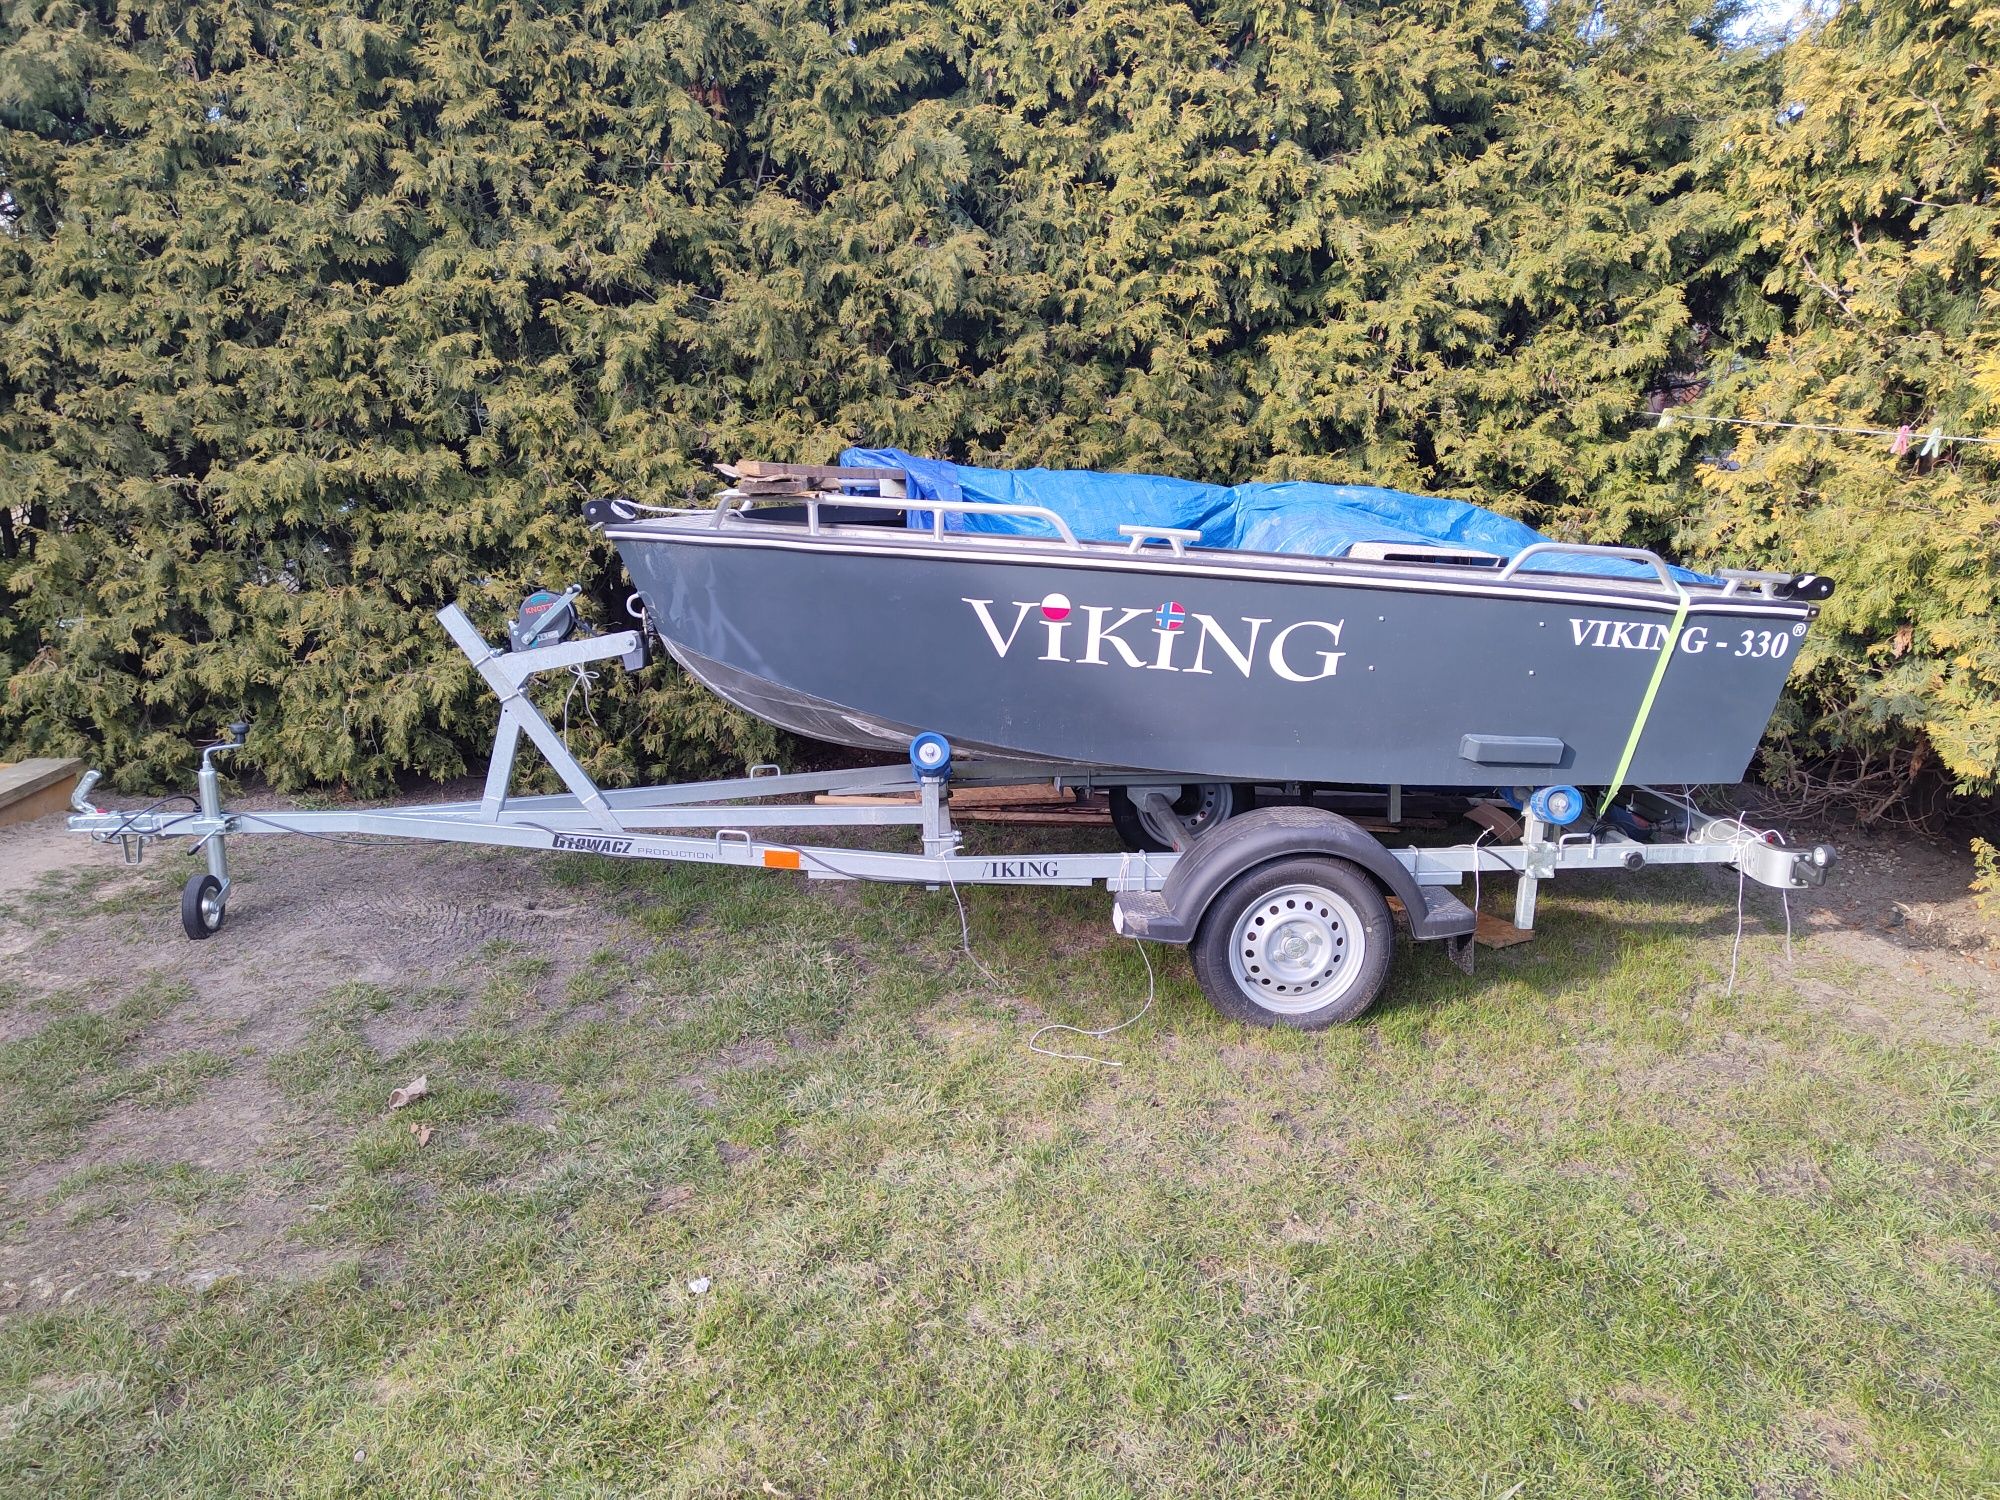 Łódka viking 330-3 z przyczepką